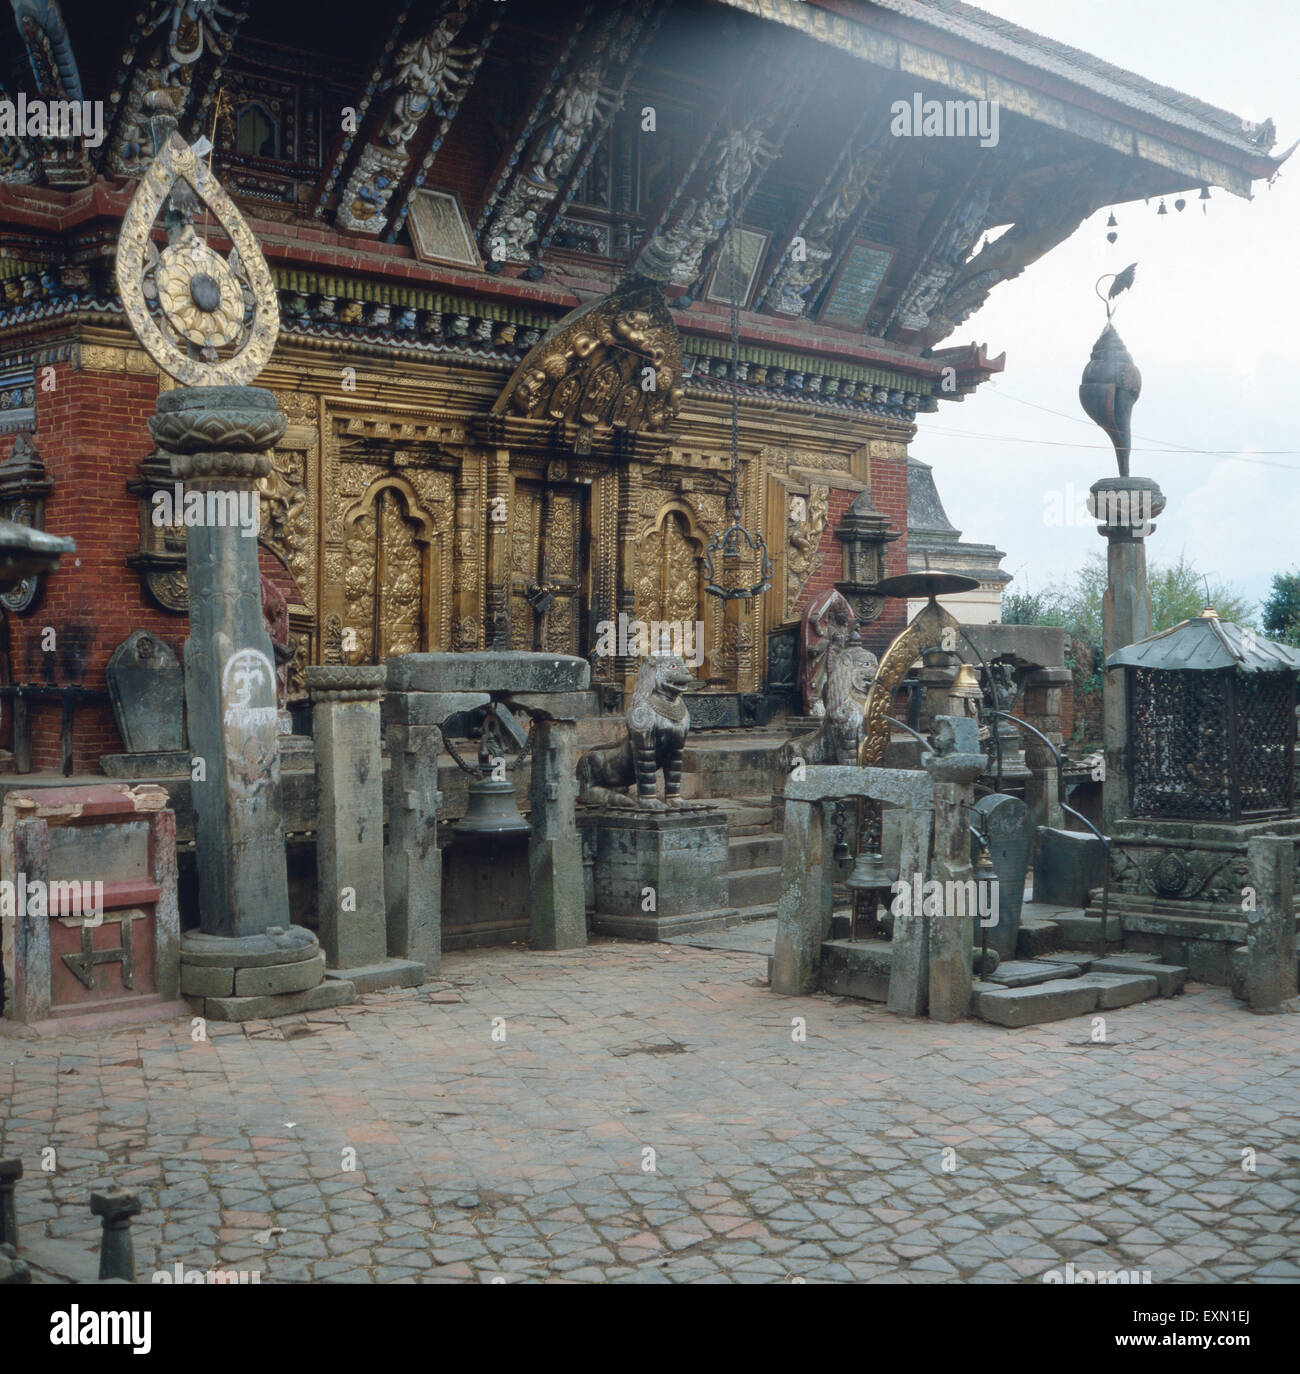 Eine Besichtigung des Vishnu-Tempels Changu Narayan bei Bhaktapur, Nepal 1970er Jahre. Visitation of Vishnu temple Changu Narayan near Bhaktapur, Nepal 1970s. Stock Photo